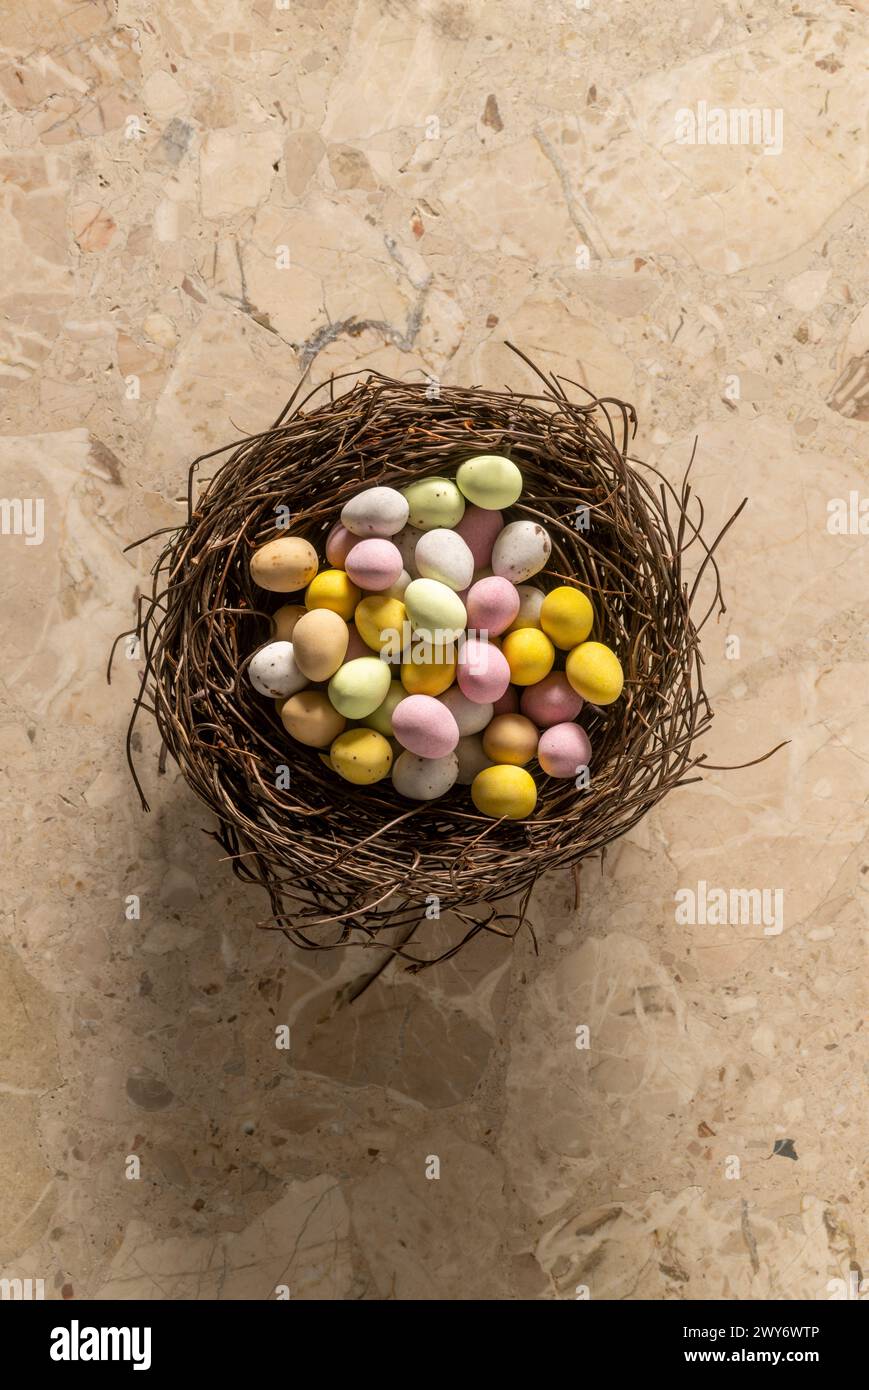 Vue en plan de mini-œufs enrobés de sucre colorés disposés dans un faux nid d'oiseau. Banque D'Images